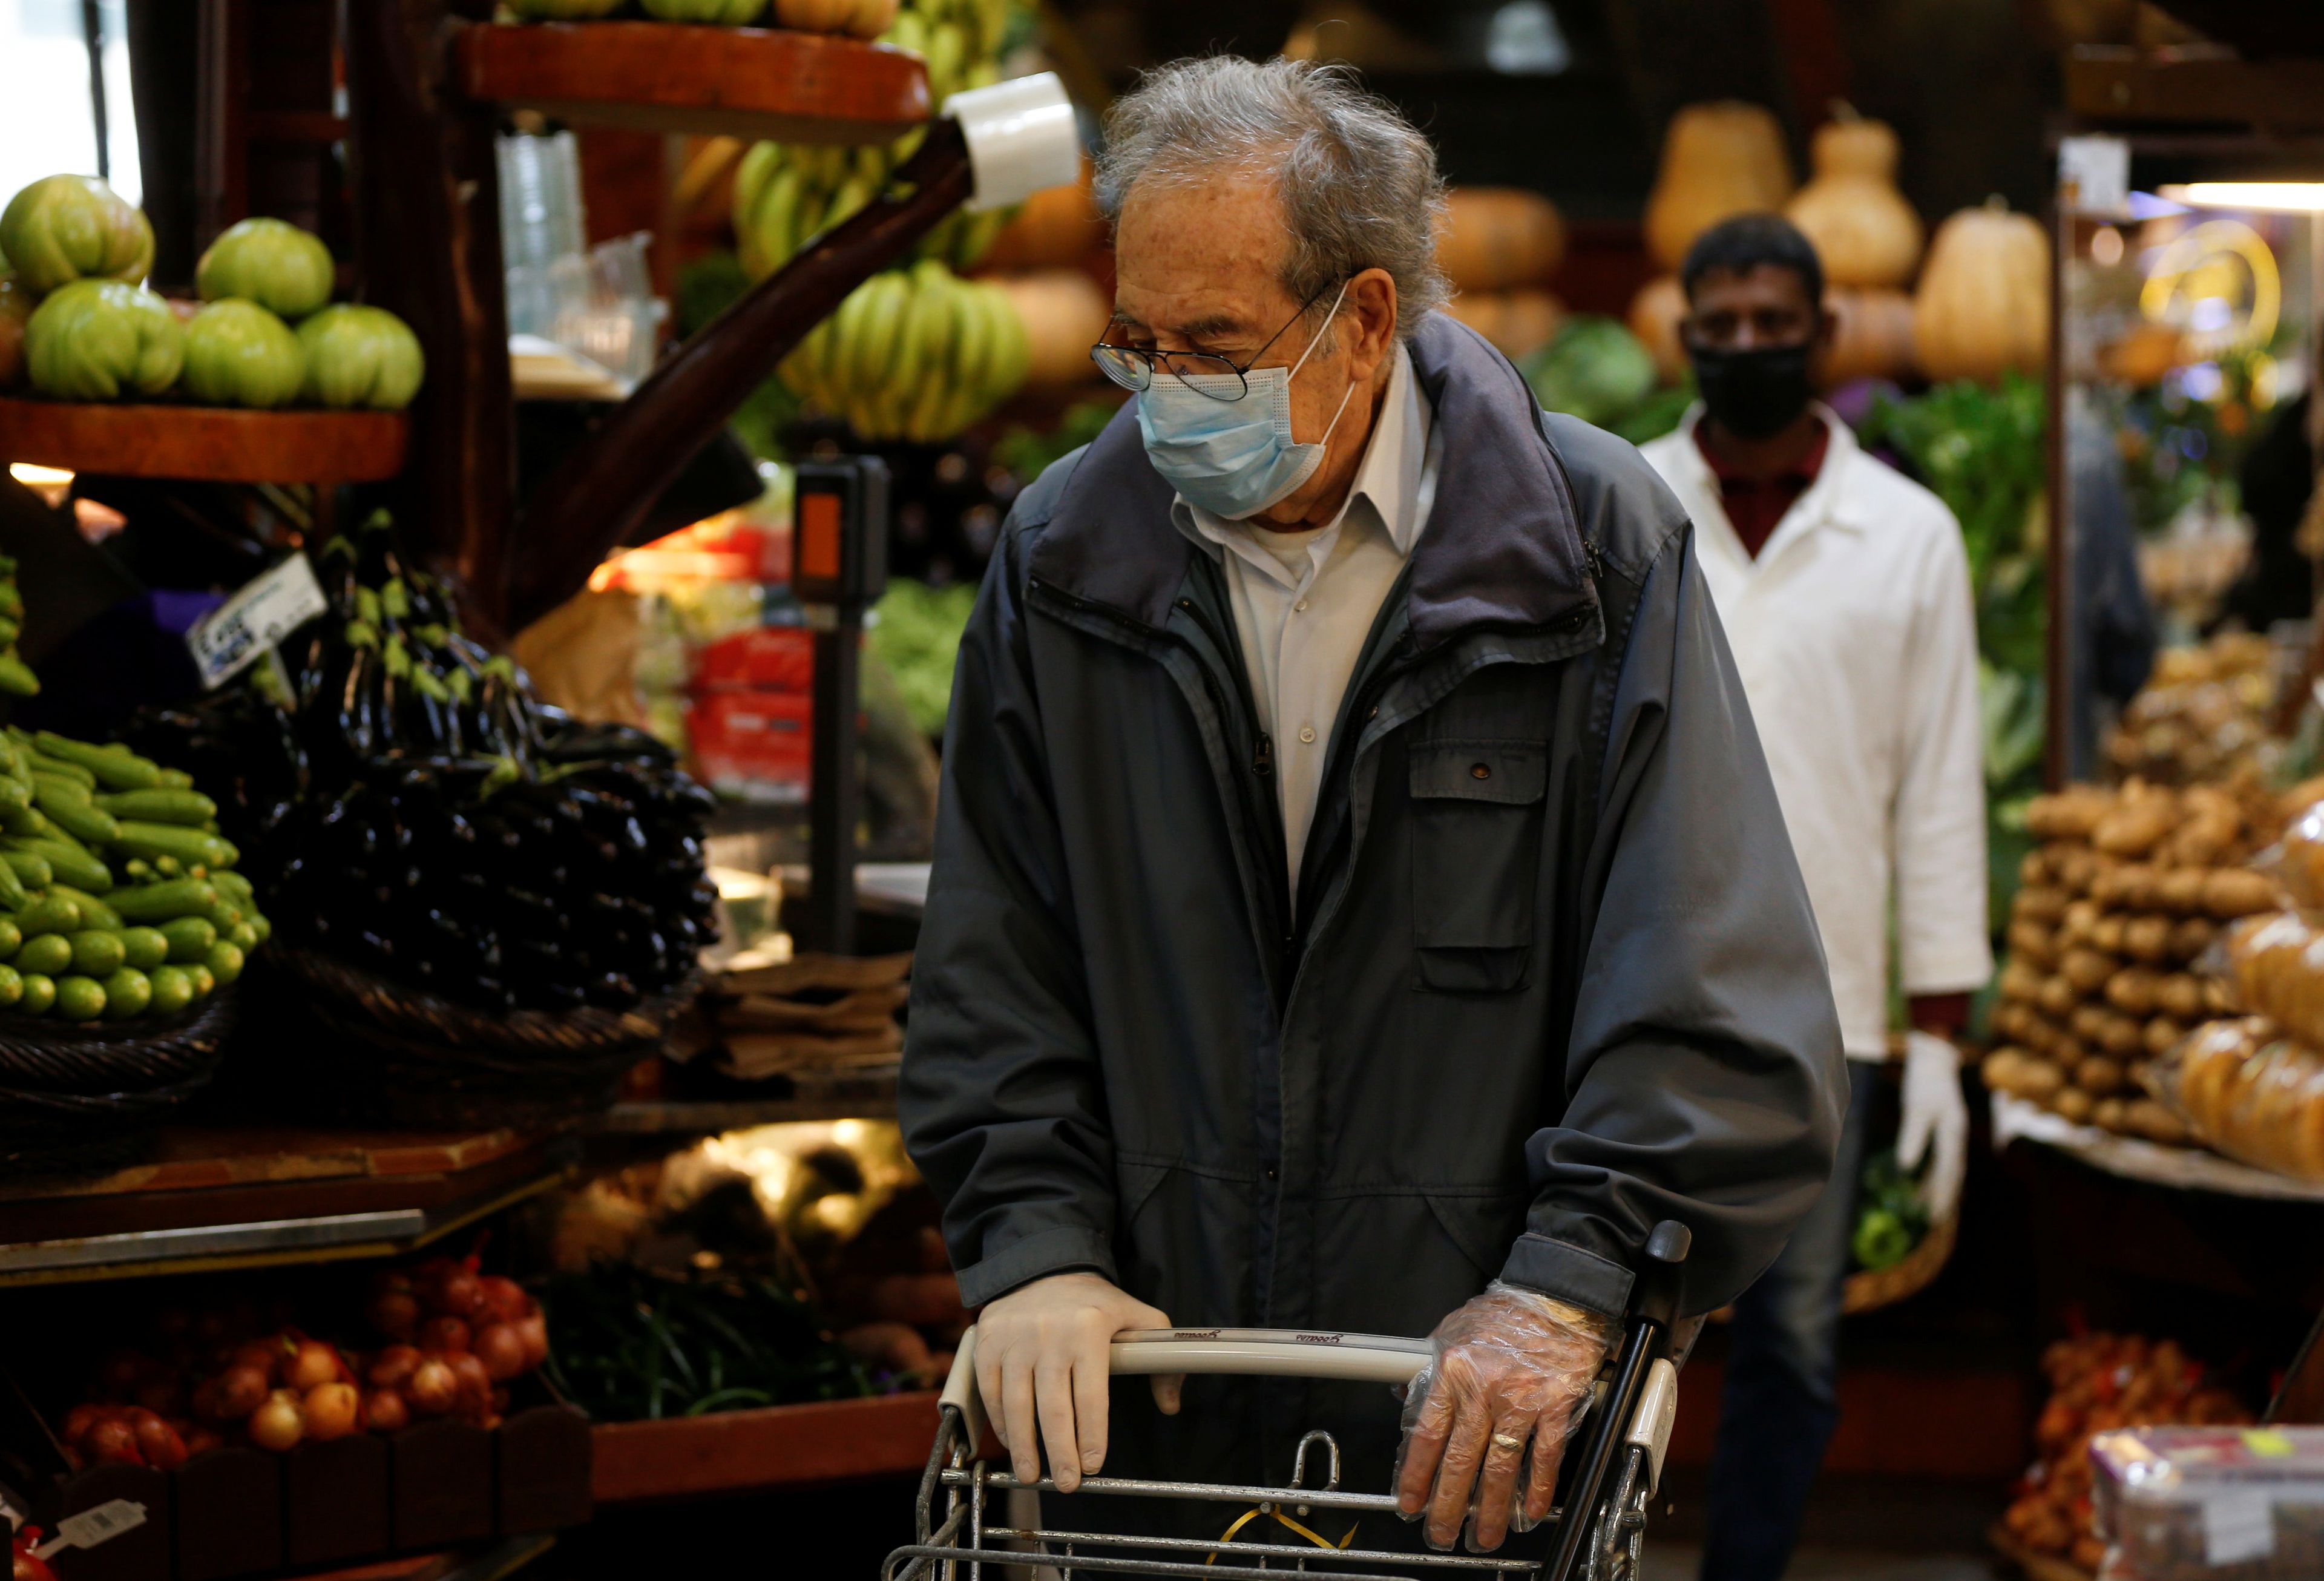 Hombre haciendo la compra durante el brote de coronavirus